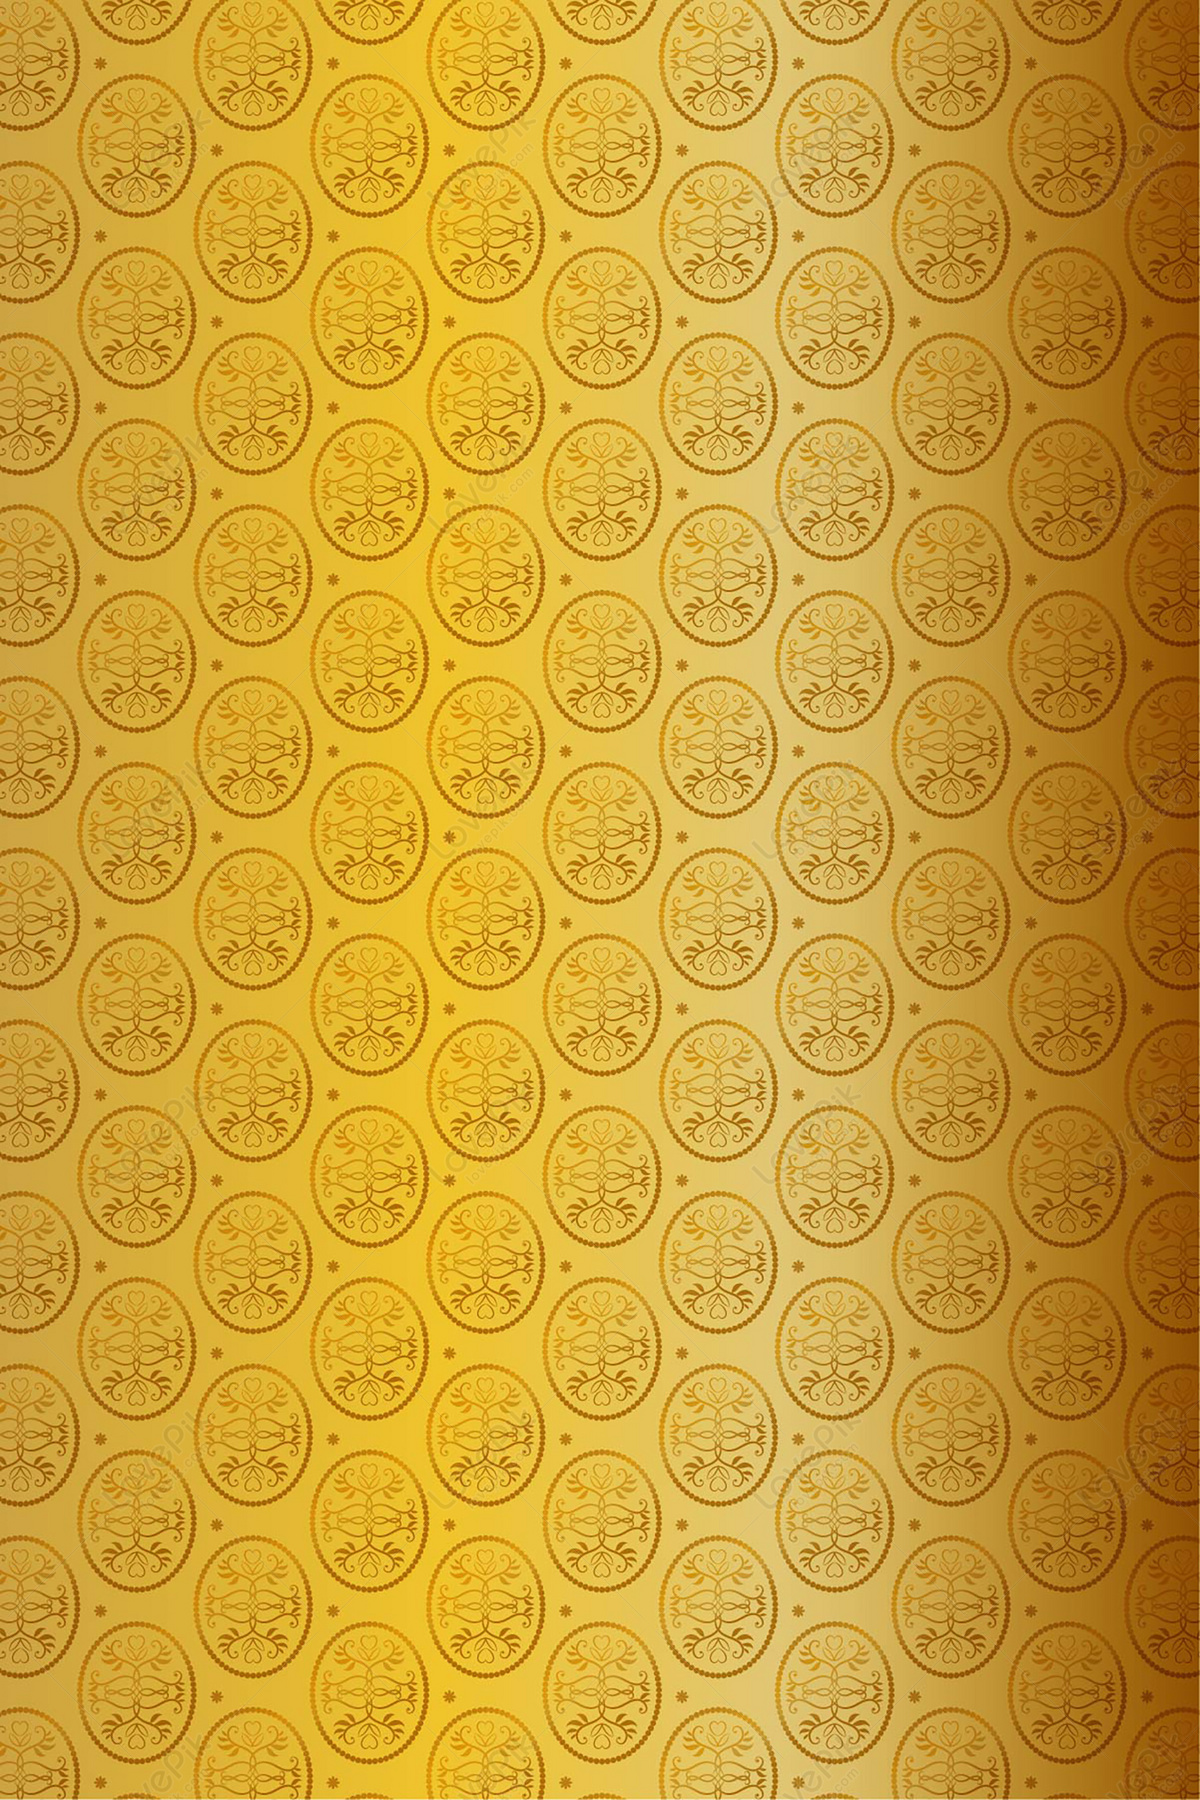 Hình nền bài hát vàng giấy dán tường: Hình nền bài hát vàng giấy dán tường sẽ mang lại cho không gian sống của bạn sự độc đáo và riêng tư. Với hình ảnh và tiếng nhạc, đây chính là một giải pháp tuyệt vời để tạo sự khác biệt cho không gian sống của mình. Hãy thử ngay và cảm nhận sự khác biệt!